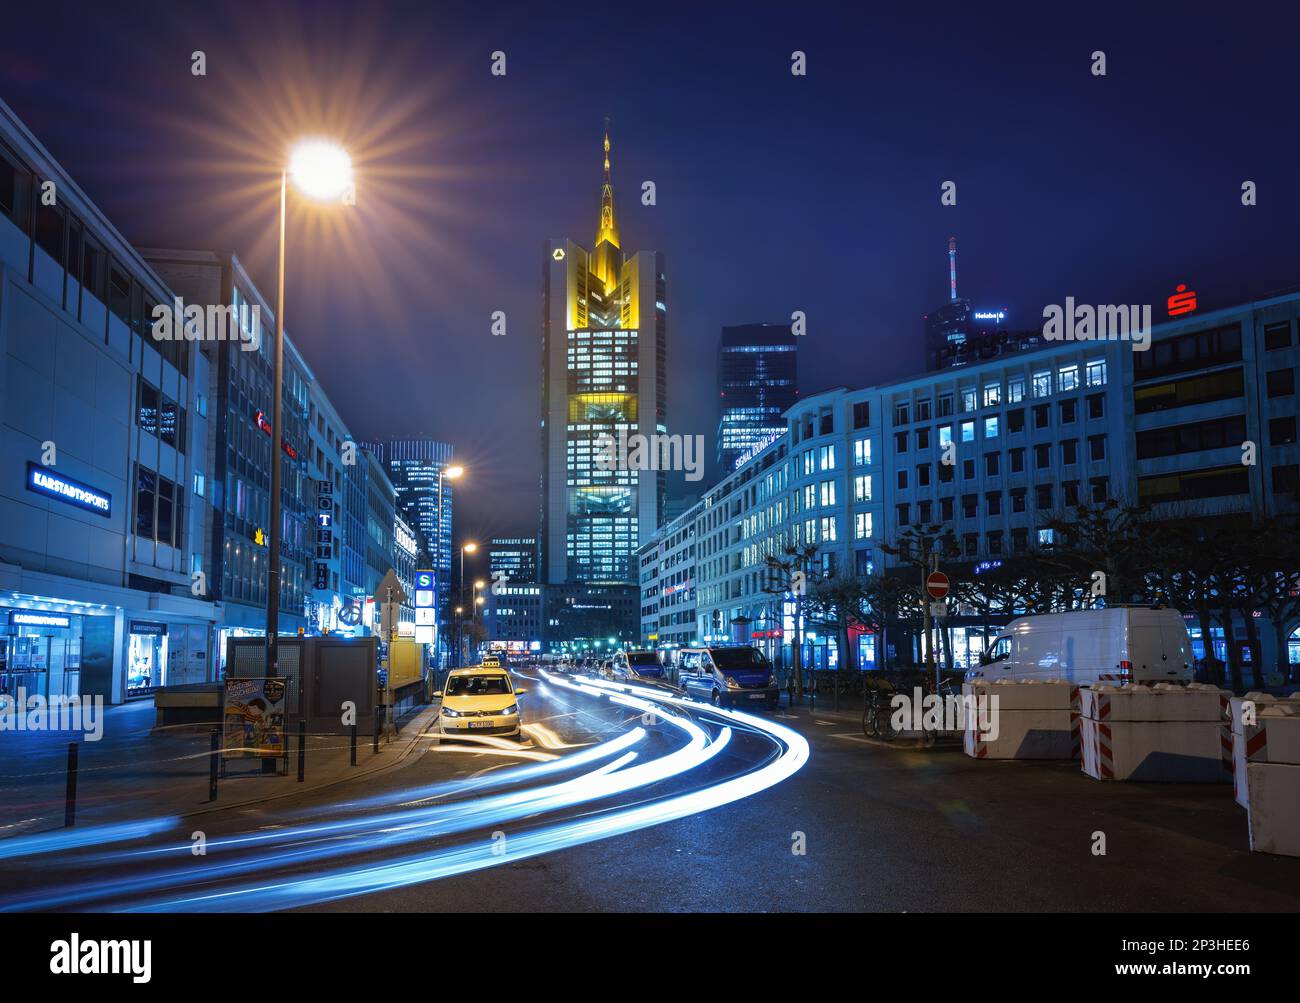 Vue nocturne de Francfort sur la rue avec la Tour Commerzbank et les sentiers de randonnée - Francfort, Allemagne Banque D'Images